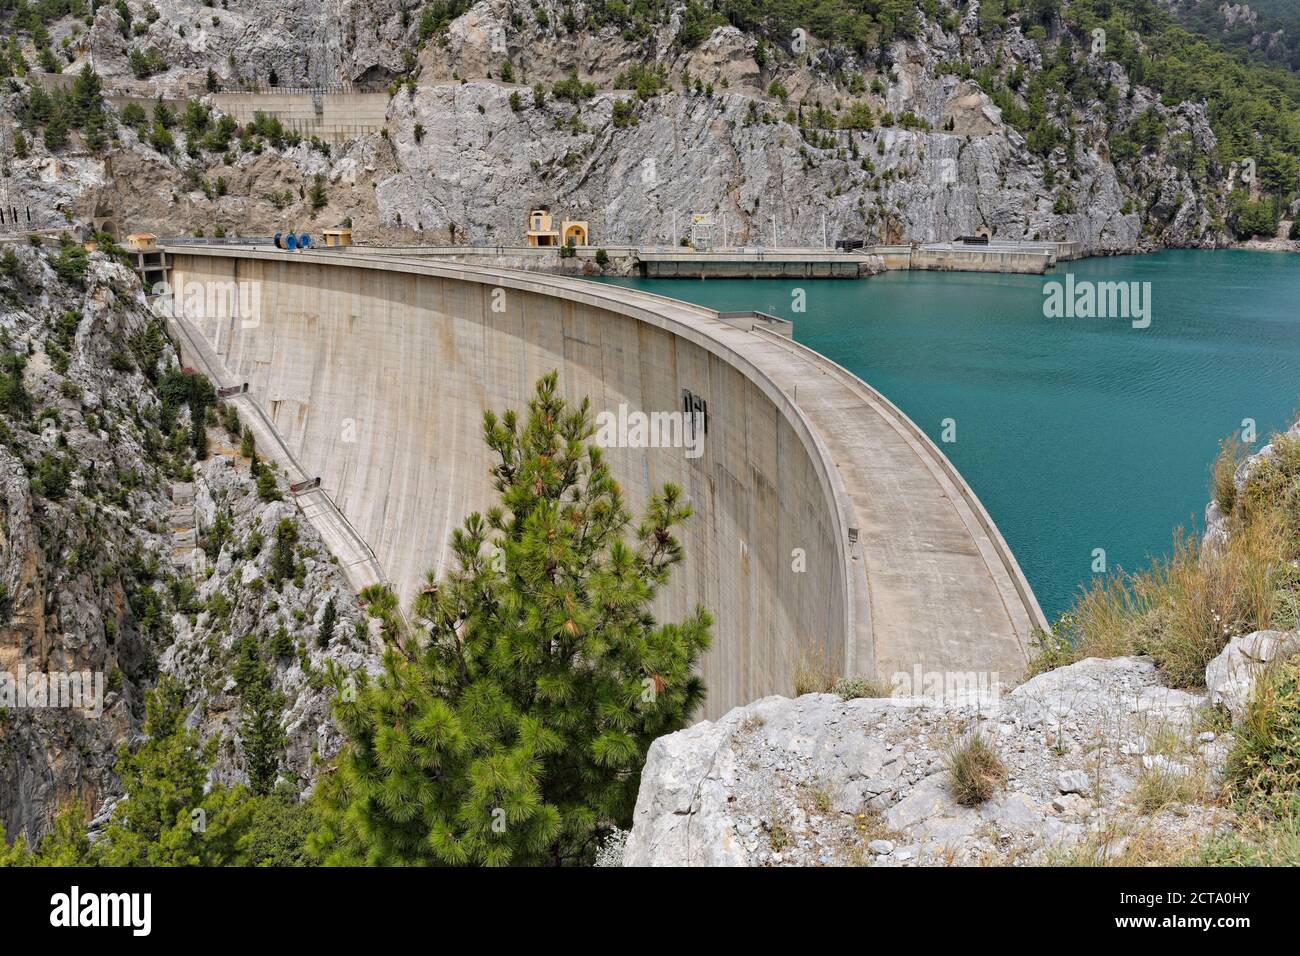 Turkey, Antalya Province, Manavgat, Oymapinar Dam Stock Photo